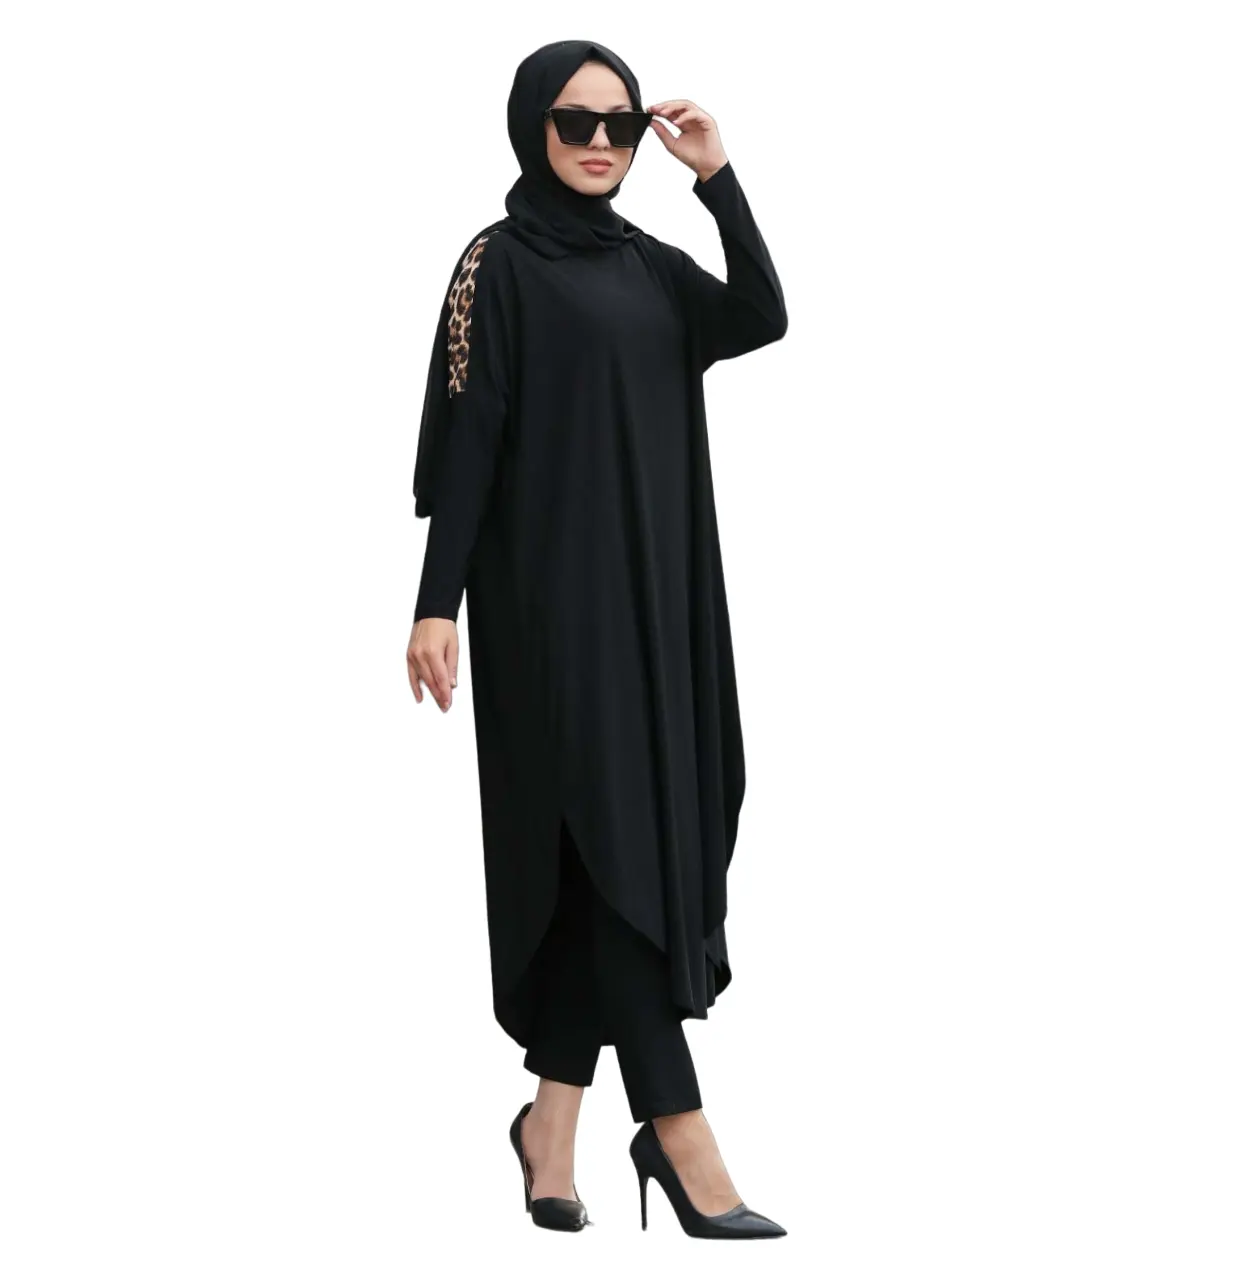 Nuovo Designer Abaya la migliore vendita all'ingrosso Abaya stampato per ragazze e donne Islamique Casual Abaya abito Hijab moda musulmana